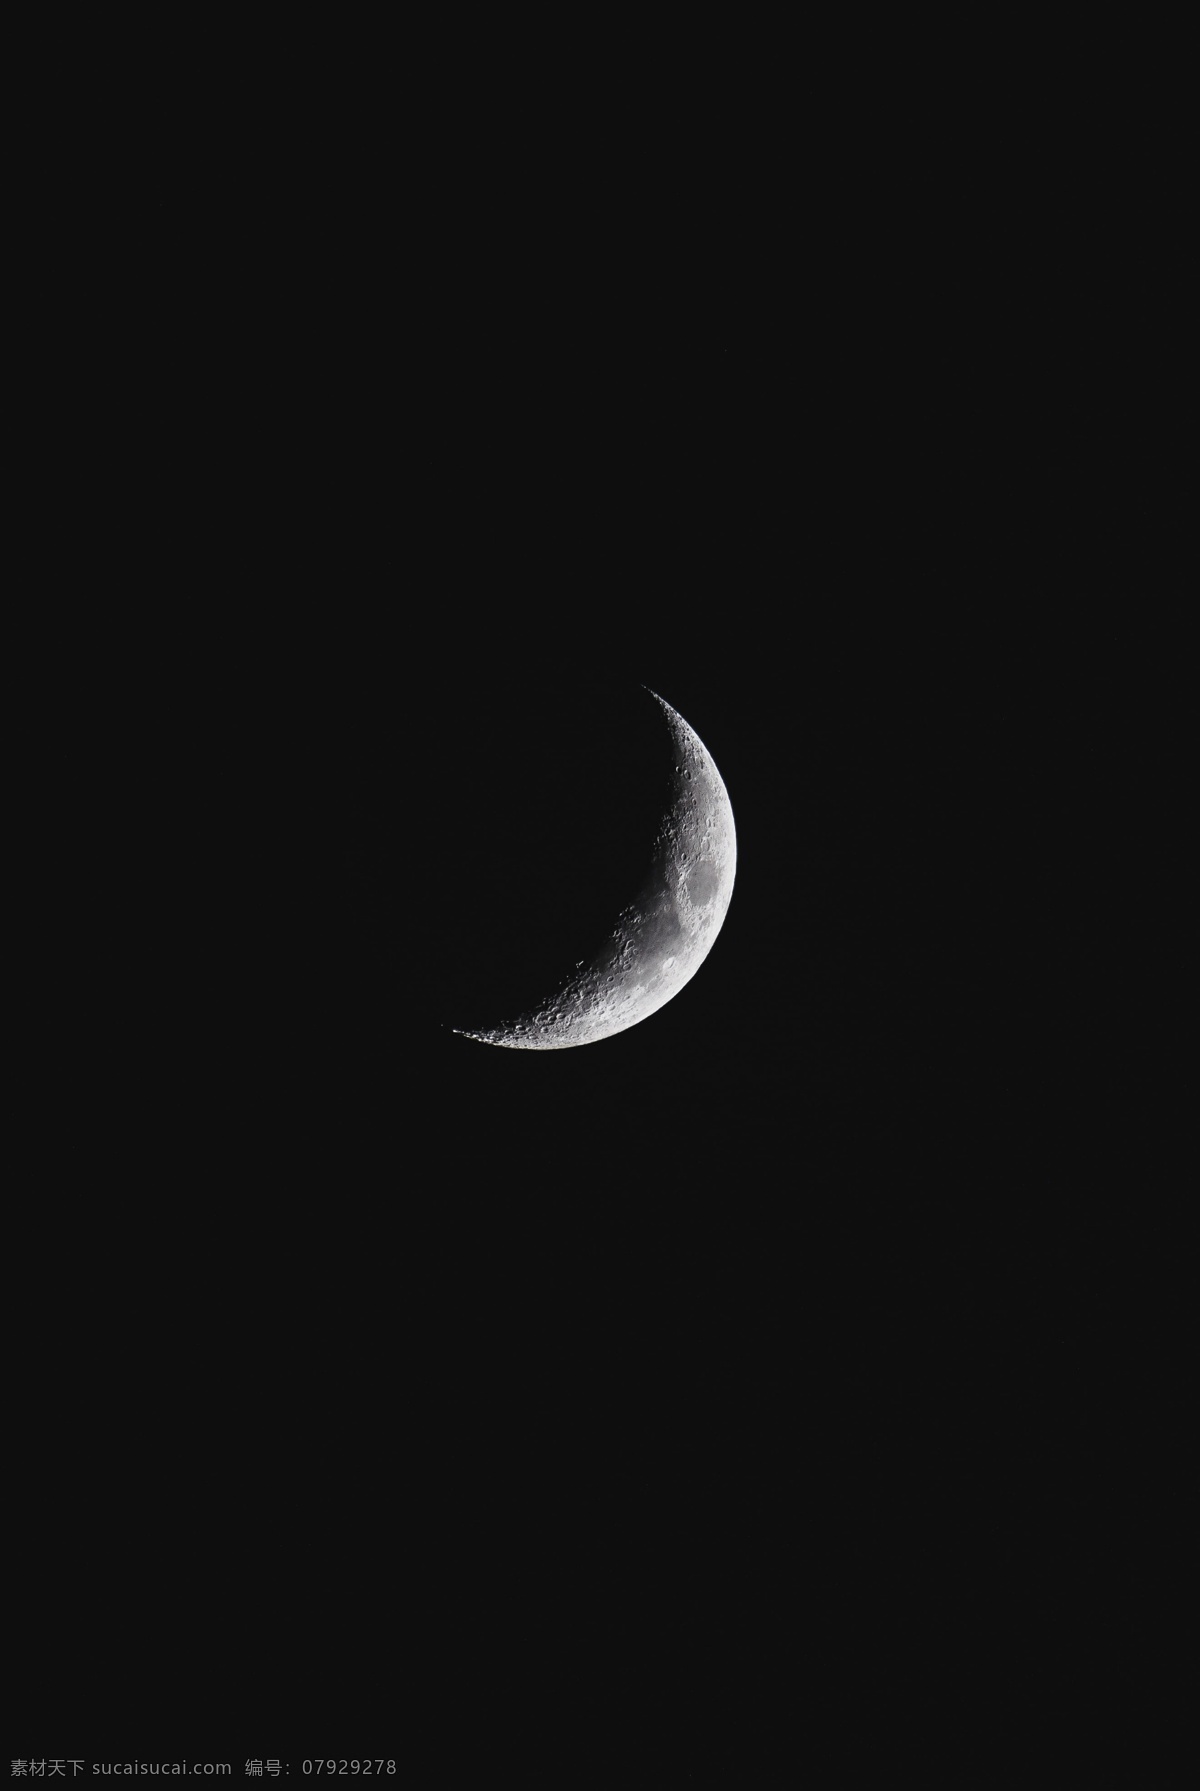 弯弯 月亮 银色 月光 月球 明月 弯月 月牙 月芽儿 月相 宇宙 天空 夜空 月面 自然景观 自然风景